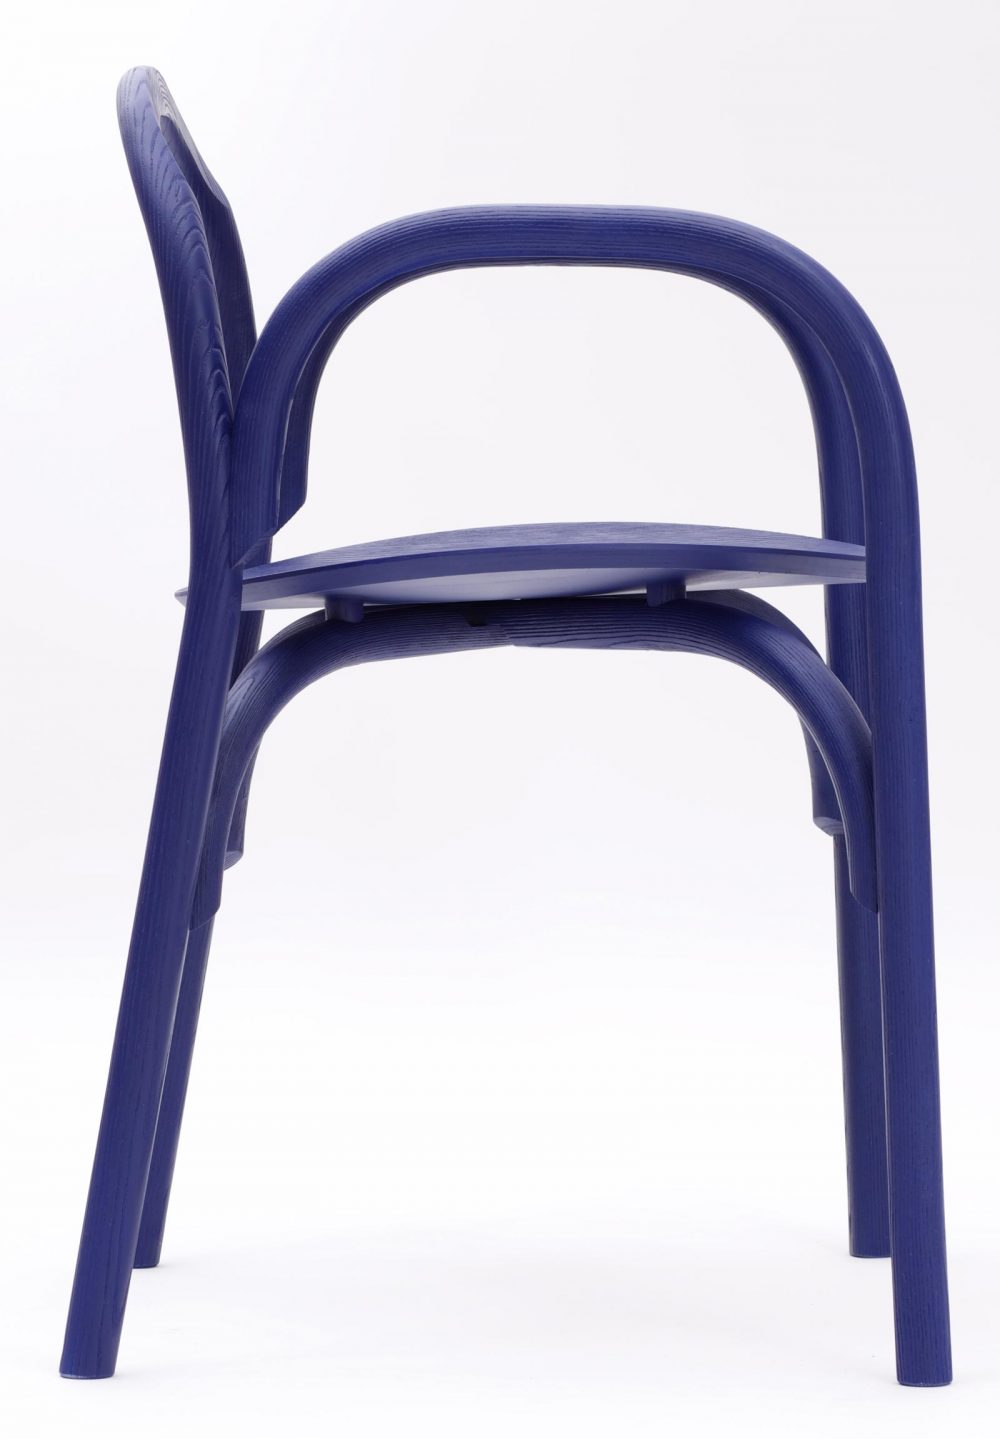 Brace Chair by Samuel Wilkinson